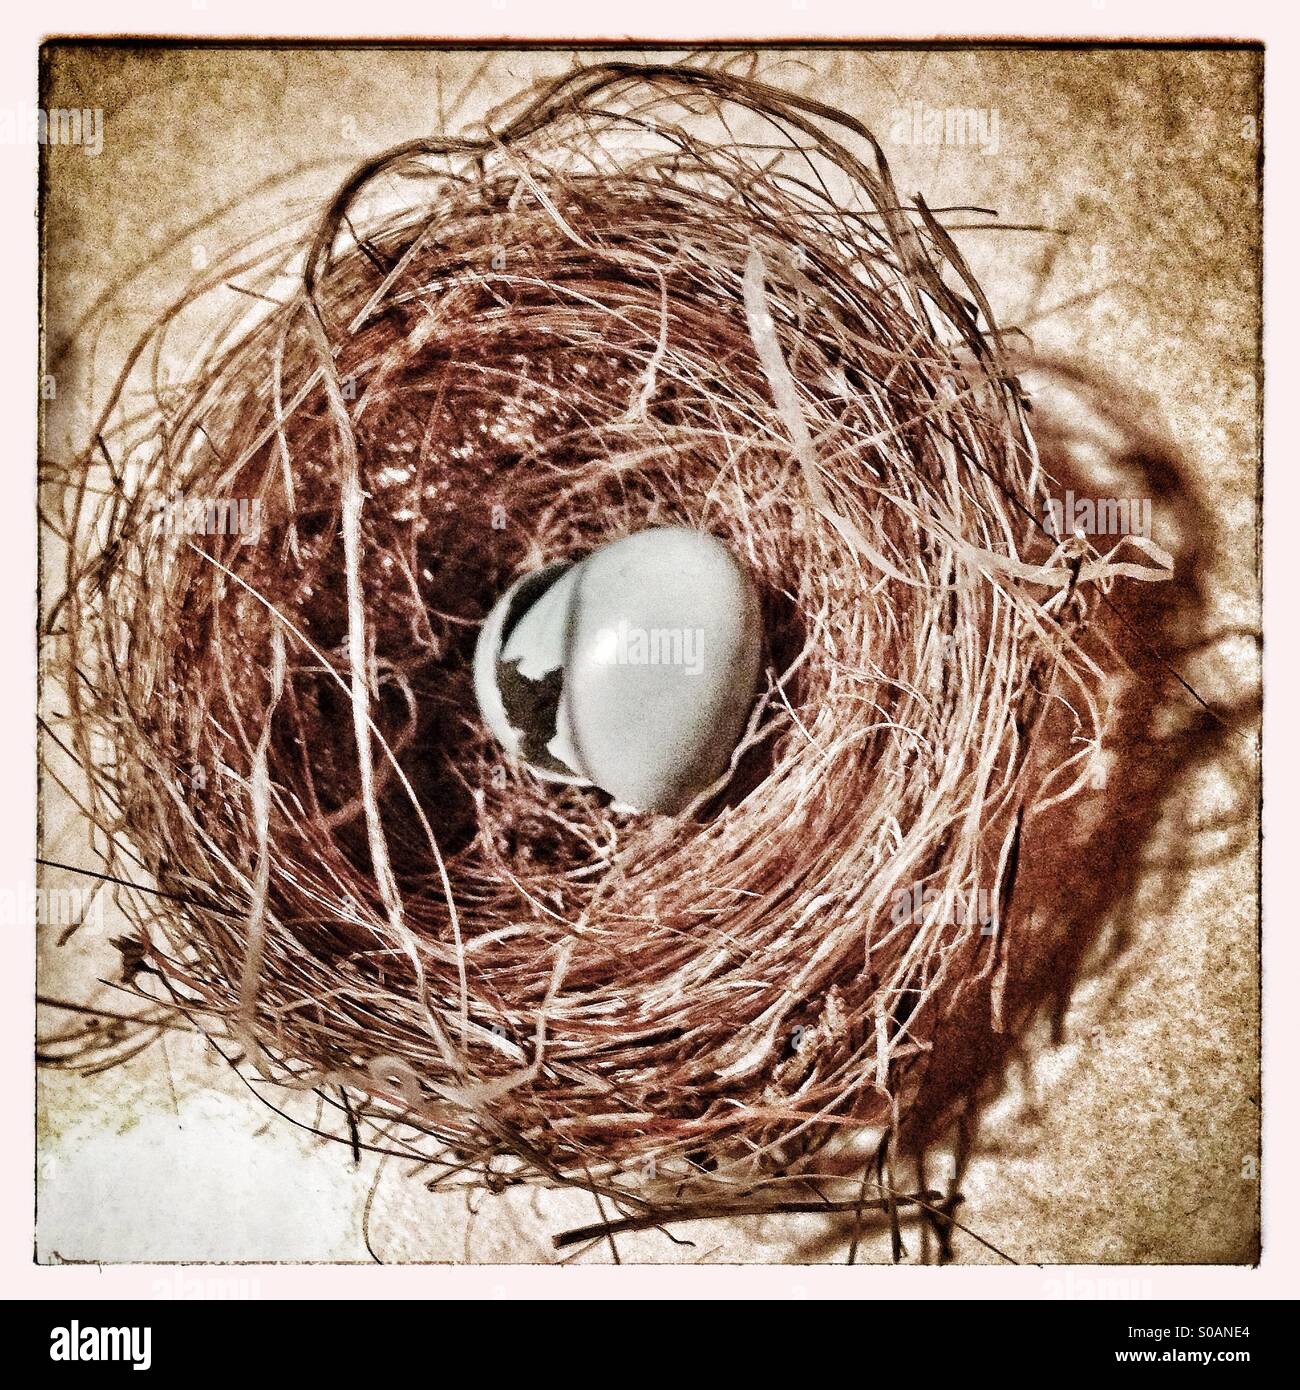 Broken birds egg in nest Stock Photo